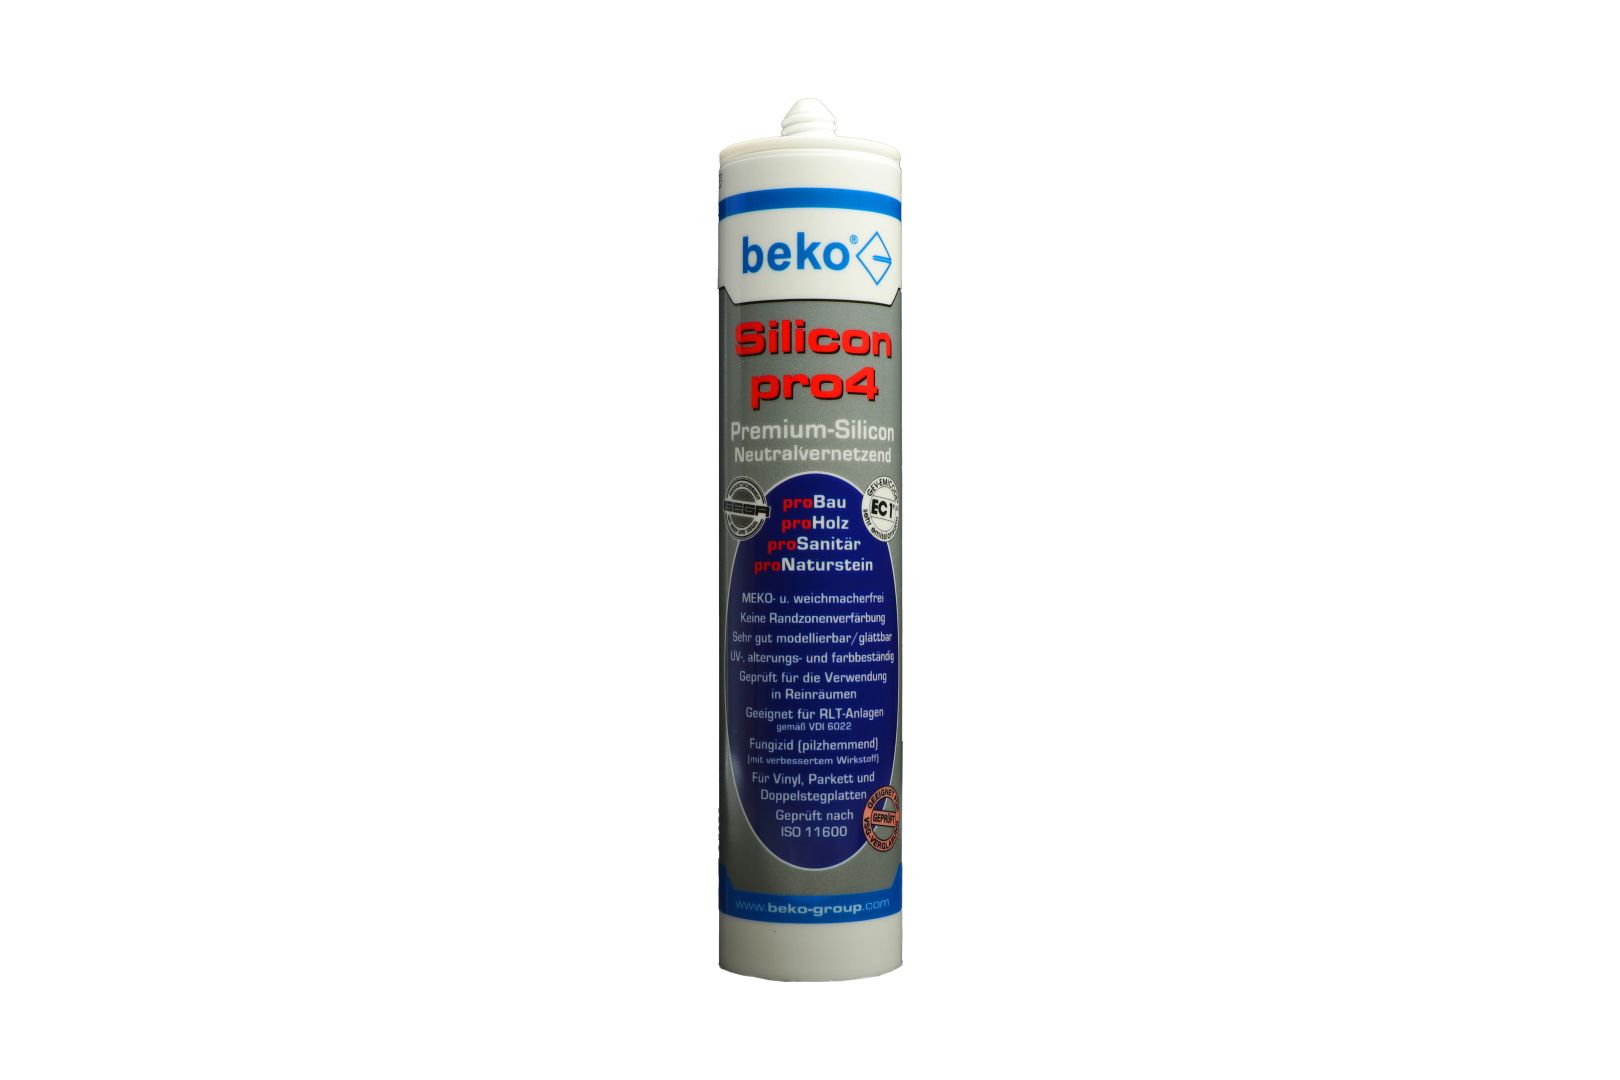 beko Silicon pro4, Premium-Silicon, Silikon-Dichtstoff, neutralvernetzend, mittelbraun/buche­-/eiche­-dunkel, 310 ml